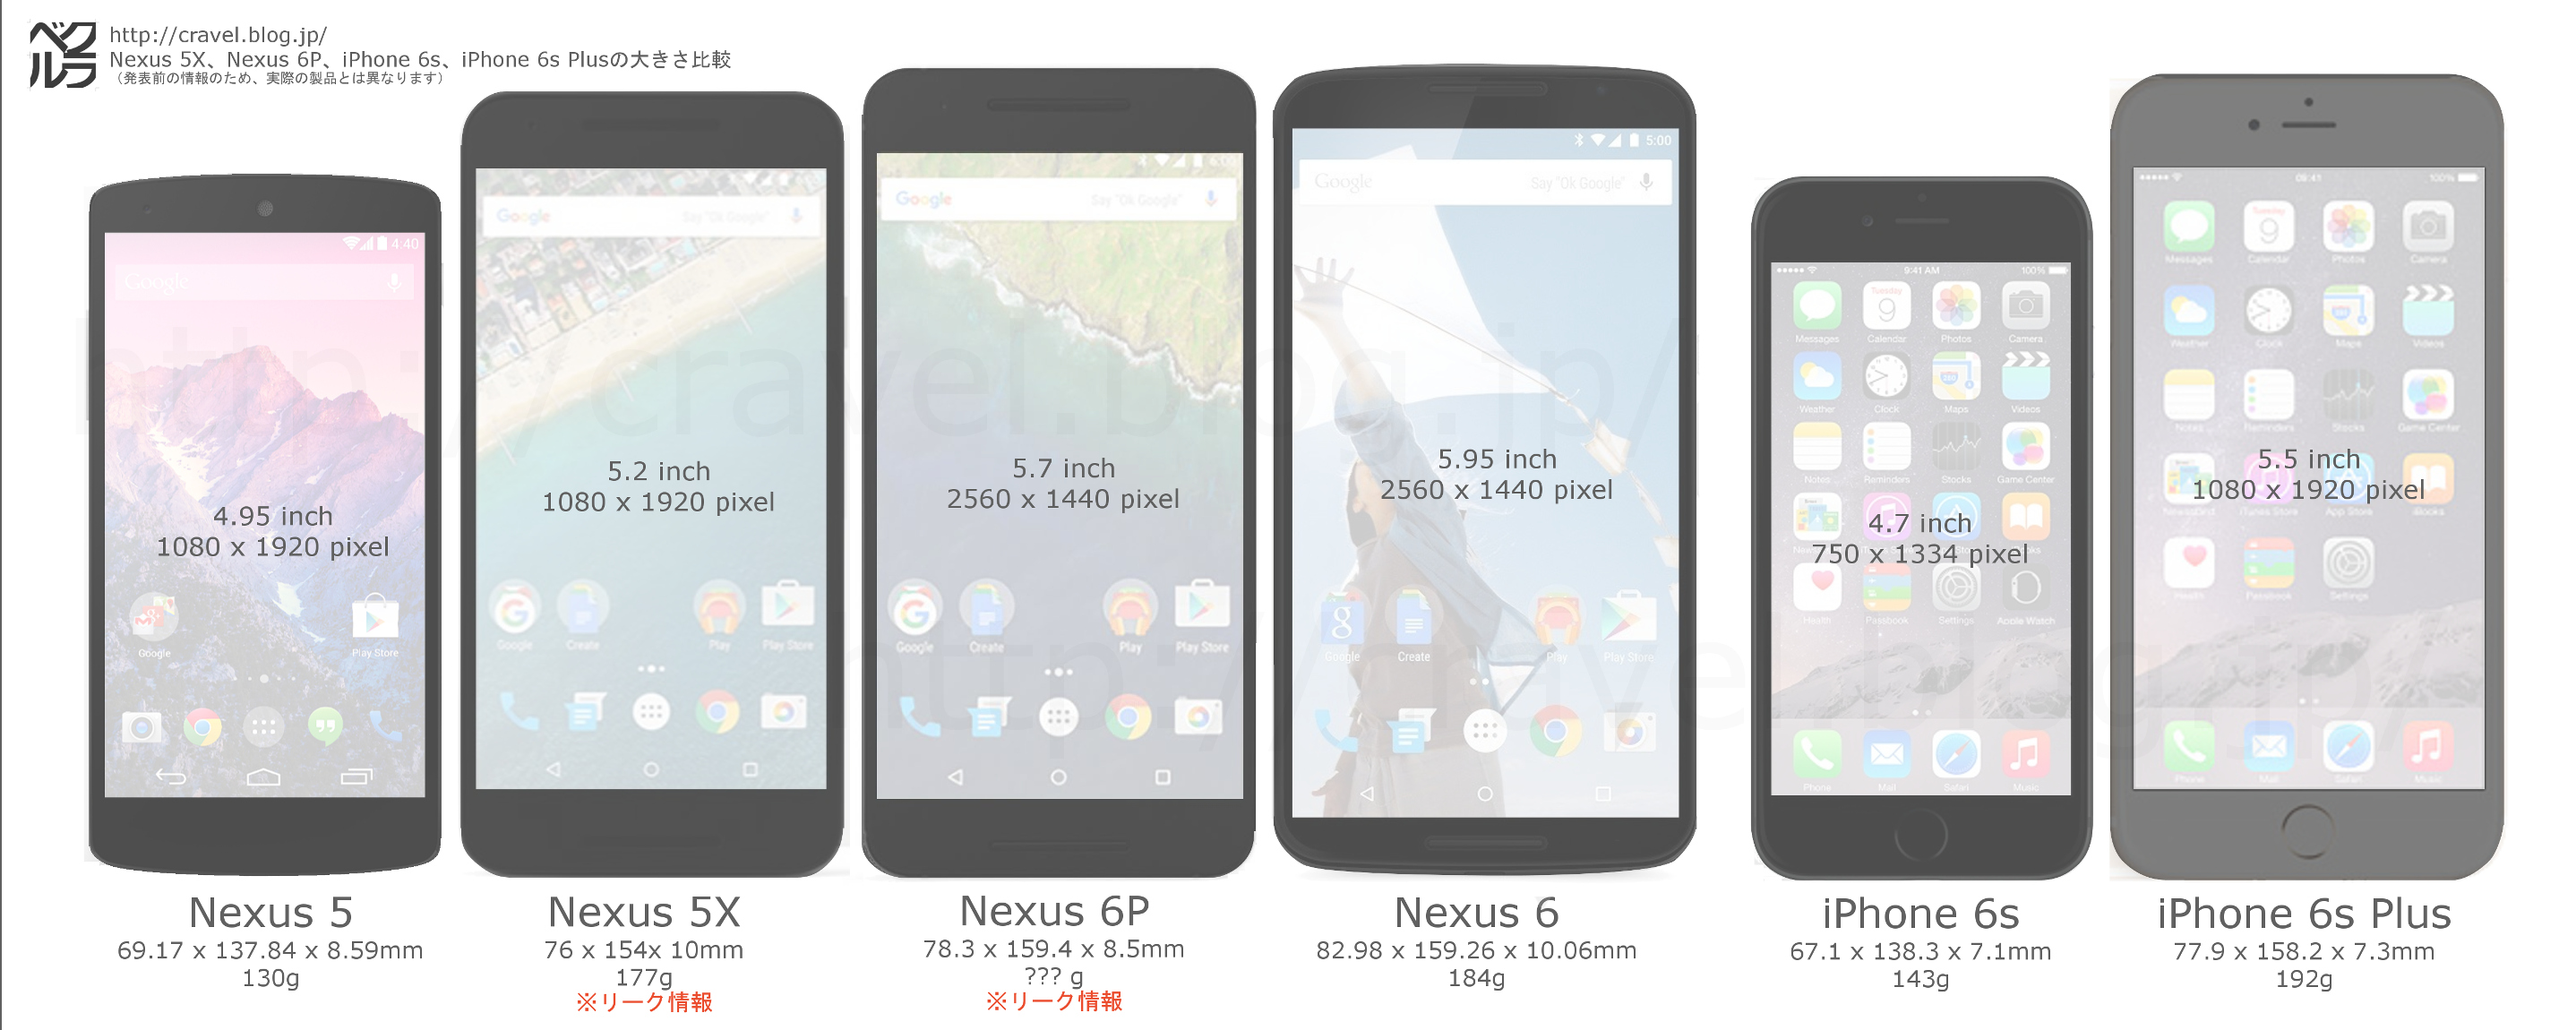 新型iphone 6s と Iphone 6s Plus と Nexus5x と Nexus6p の大きさ比較画像 クラベル